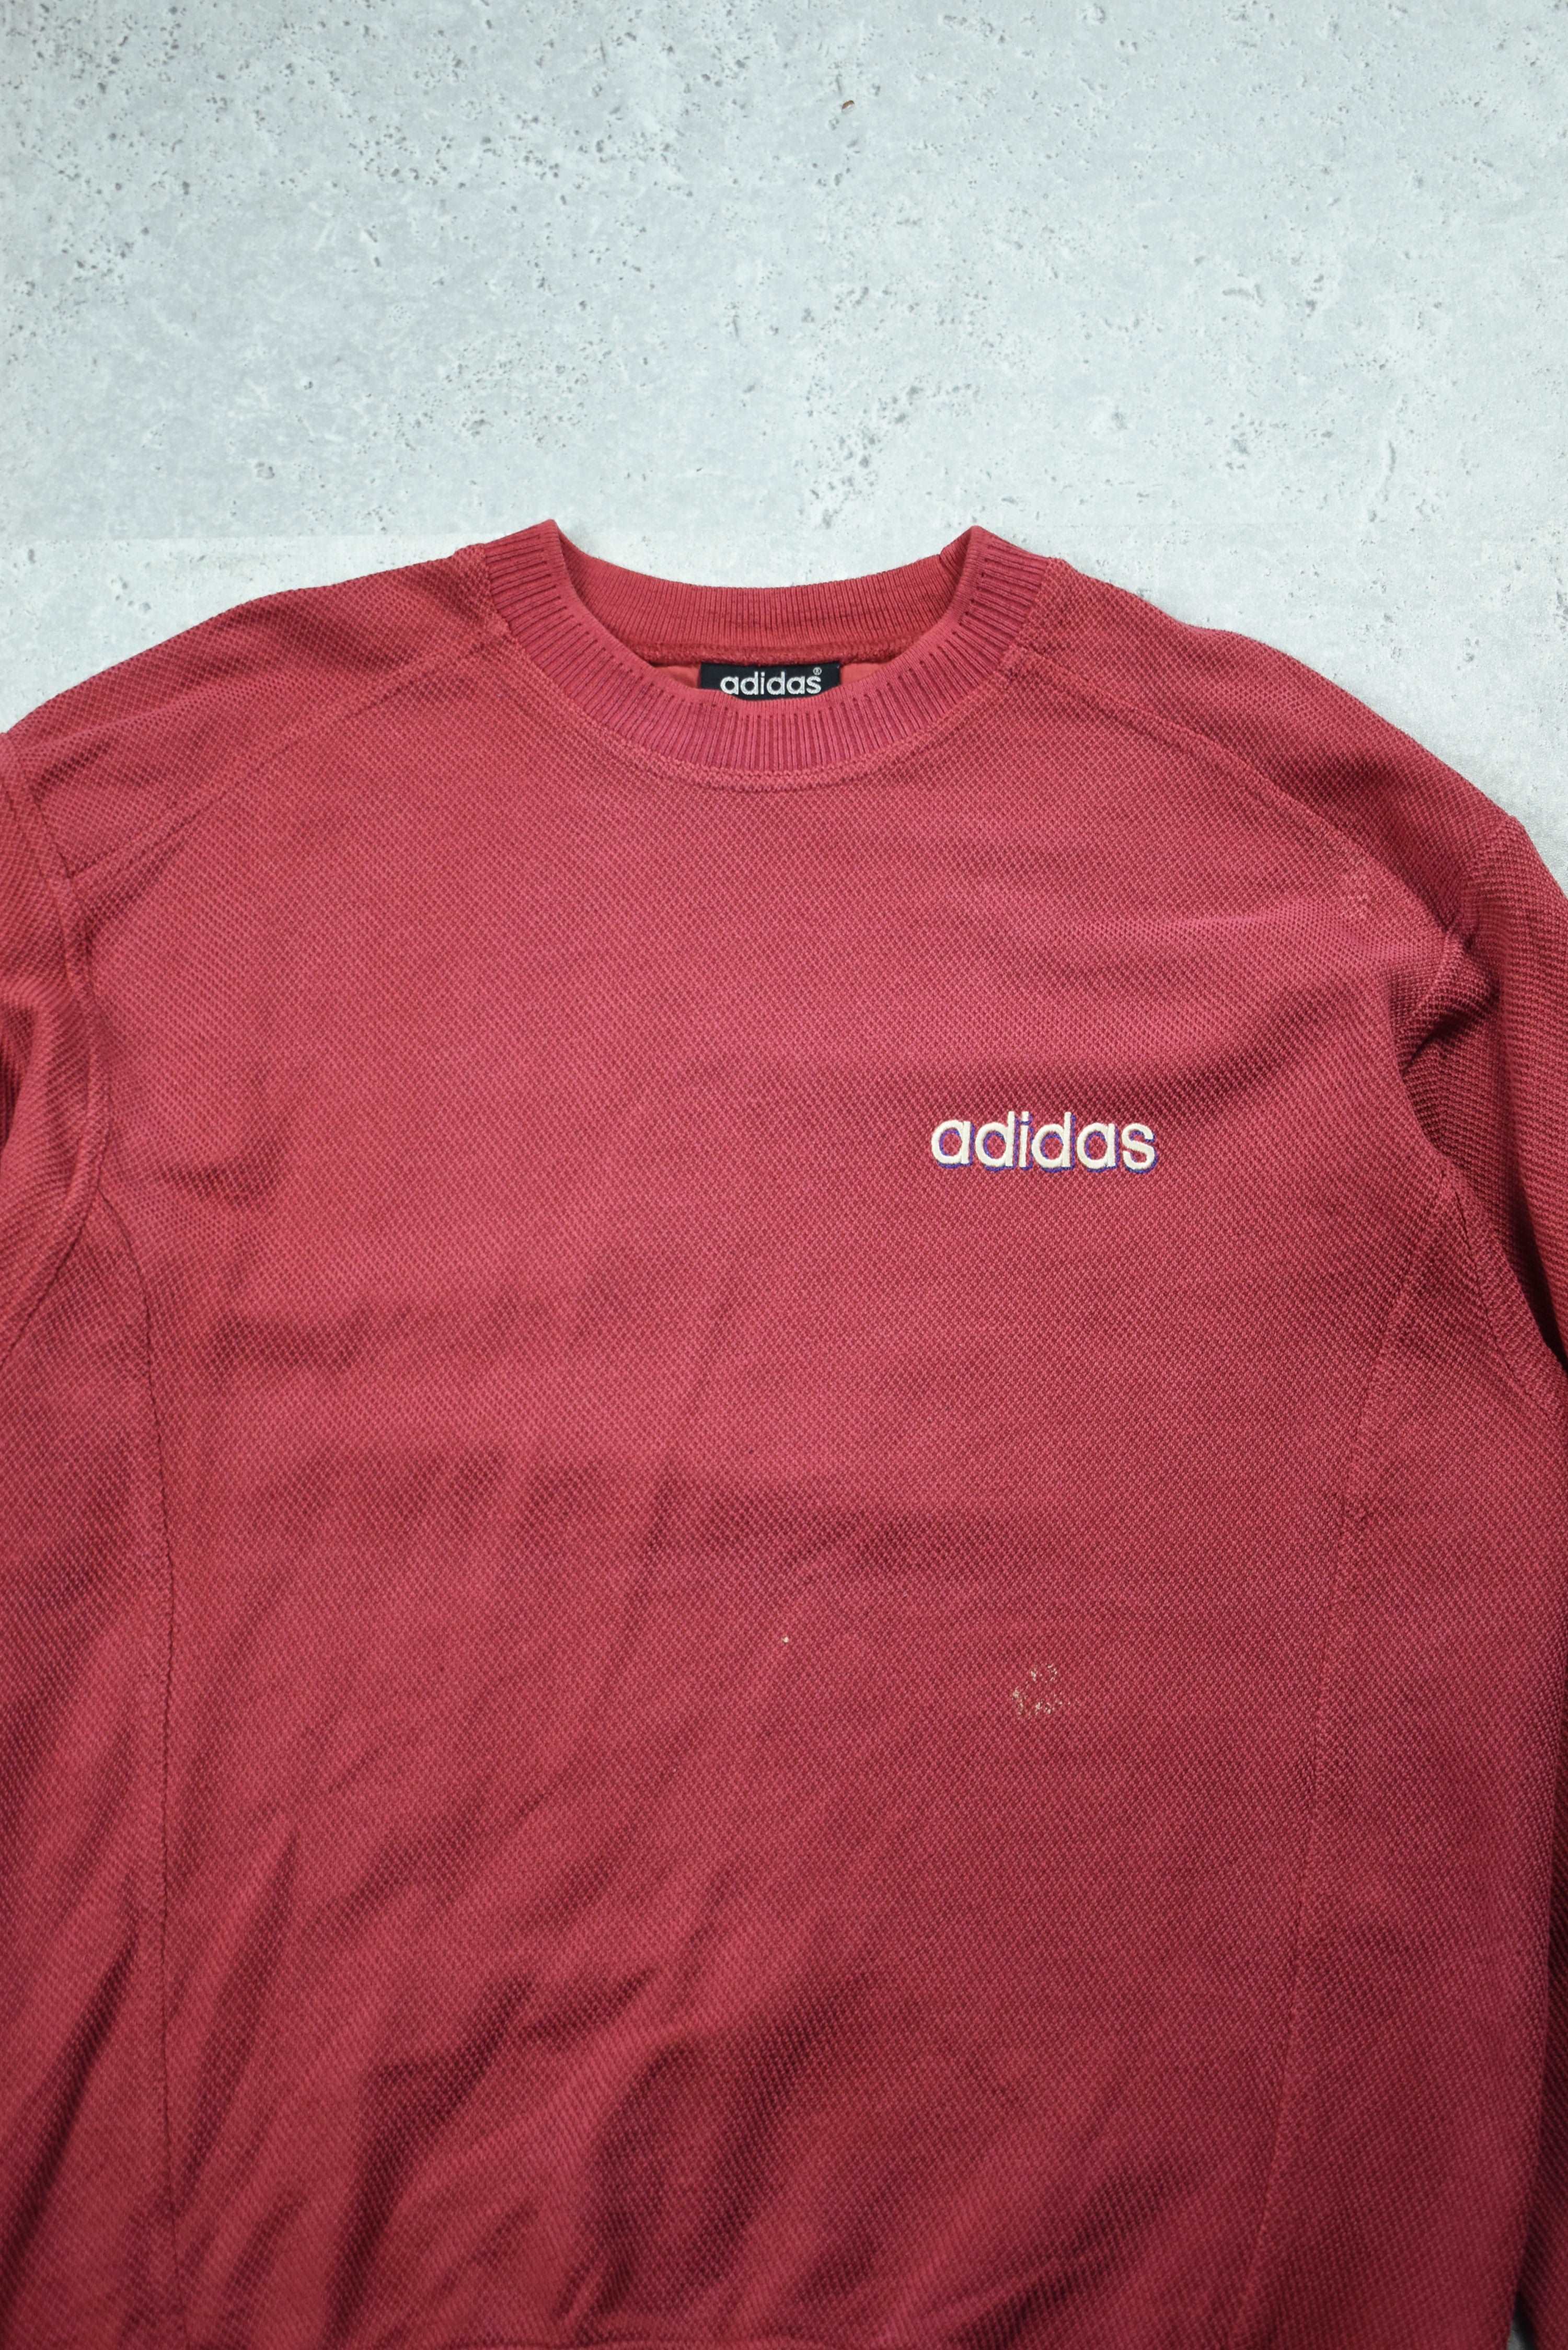 Vintage Adidas Embroidered Cord Sweatshirt Medium